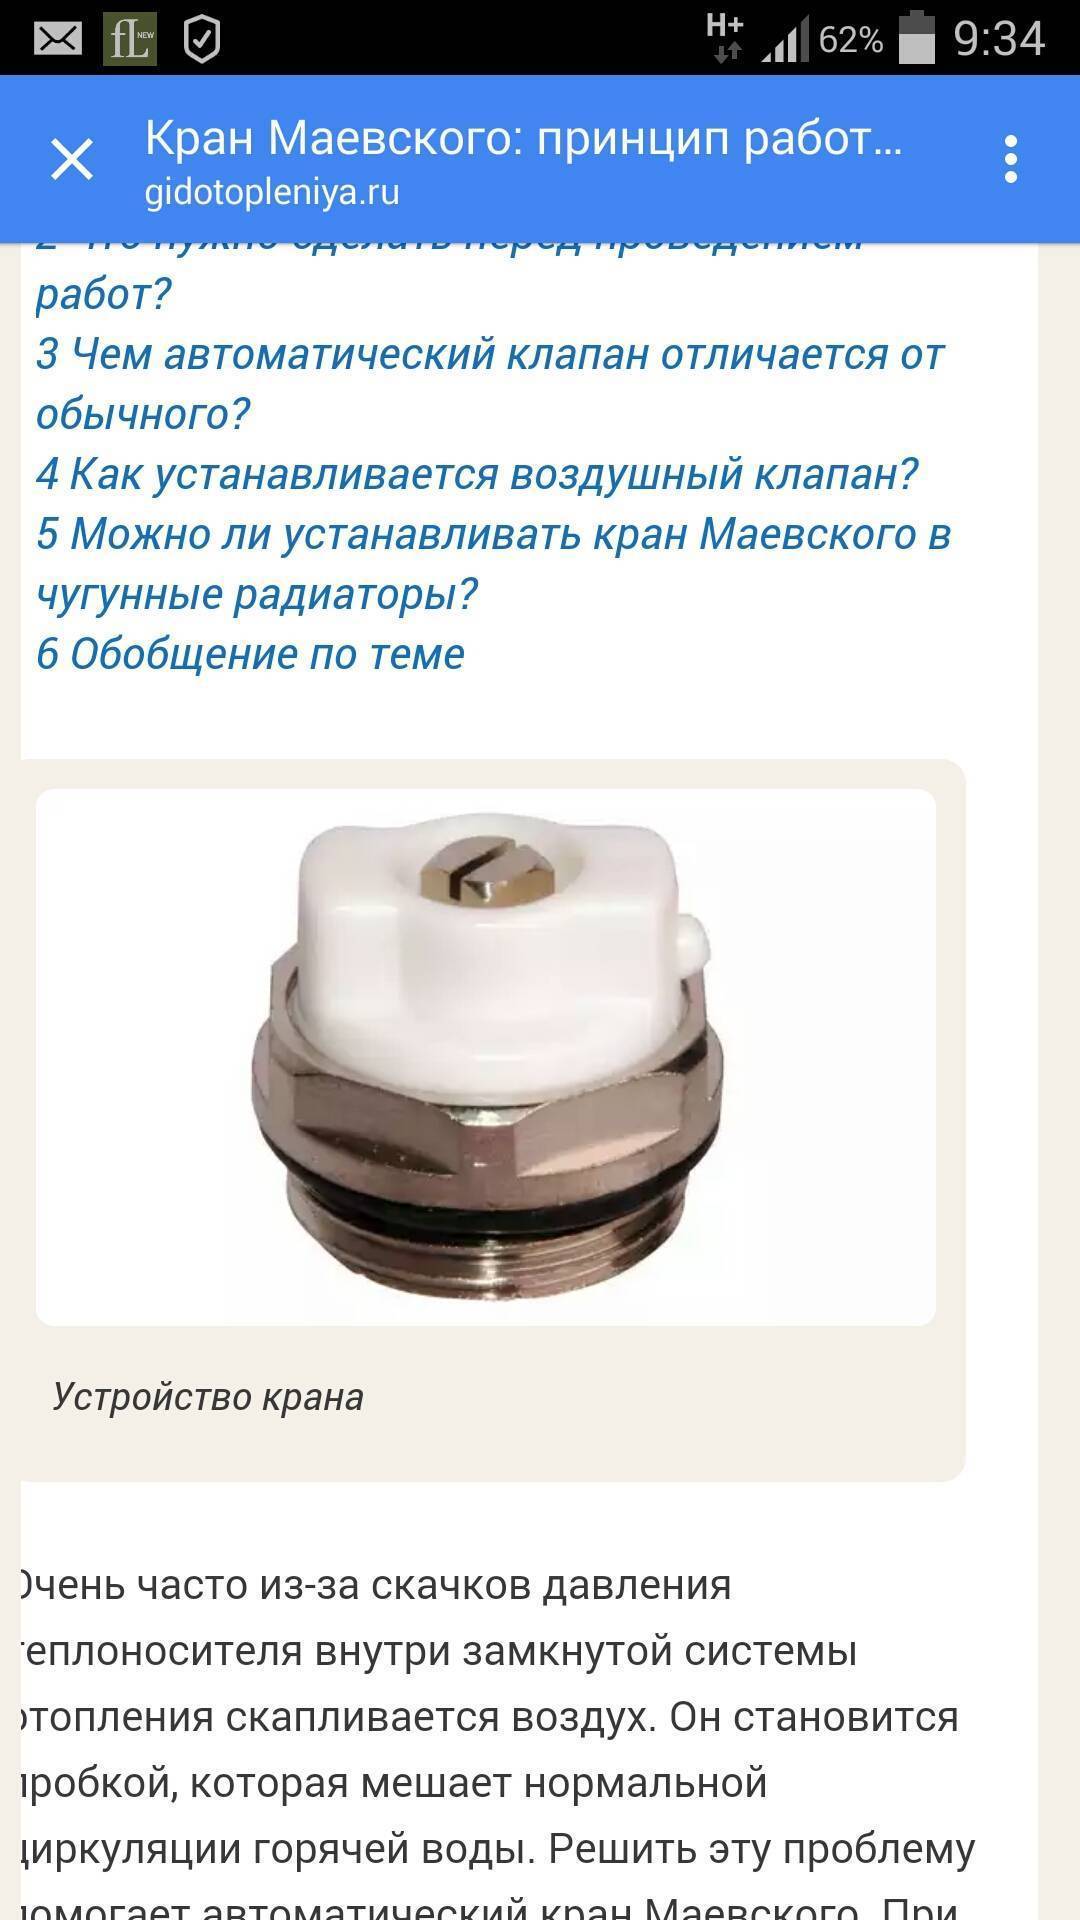 Кран маевского на чугунный радиатор и биметаллический: видео-инструкция по установке, фото